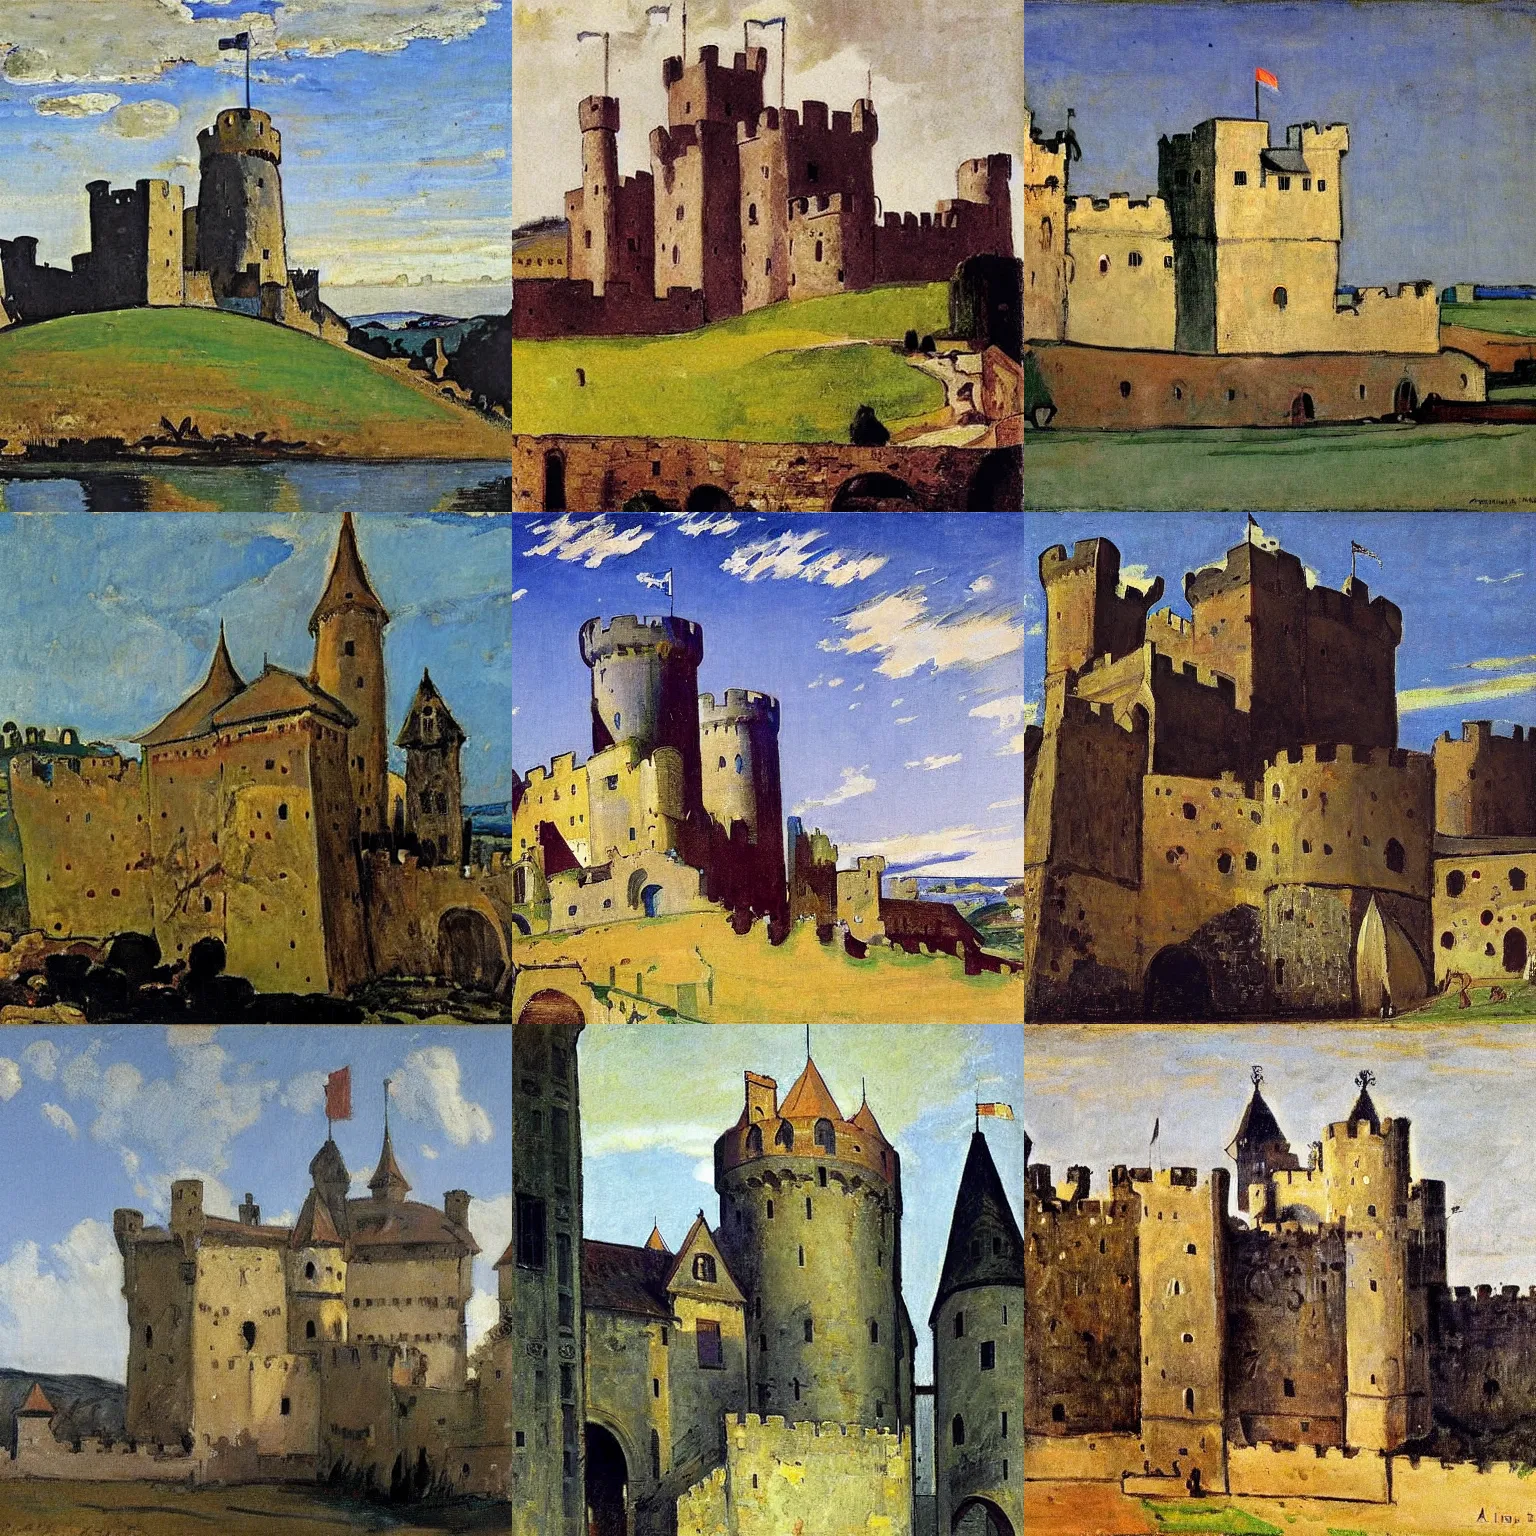 Prompt: medieval castle, by alfred henry maurer